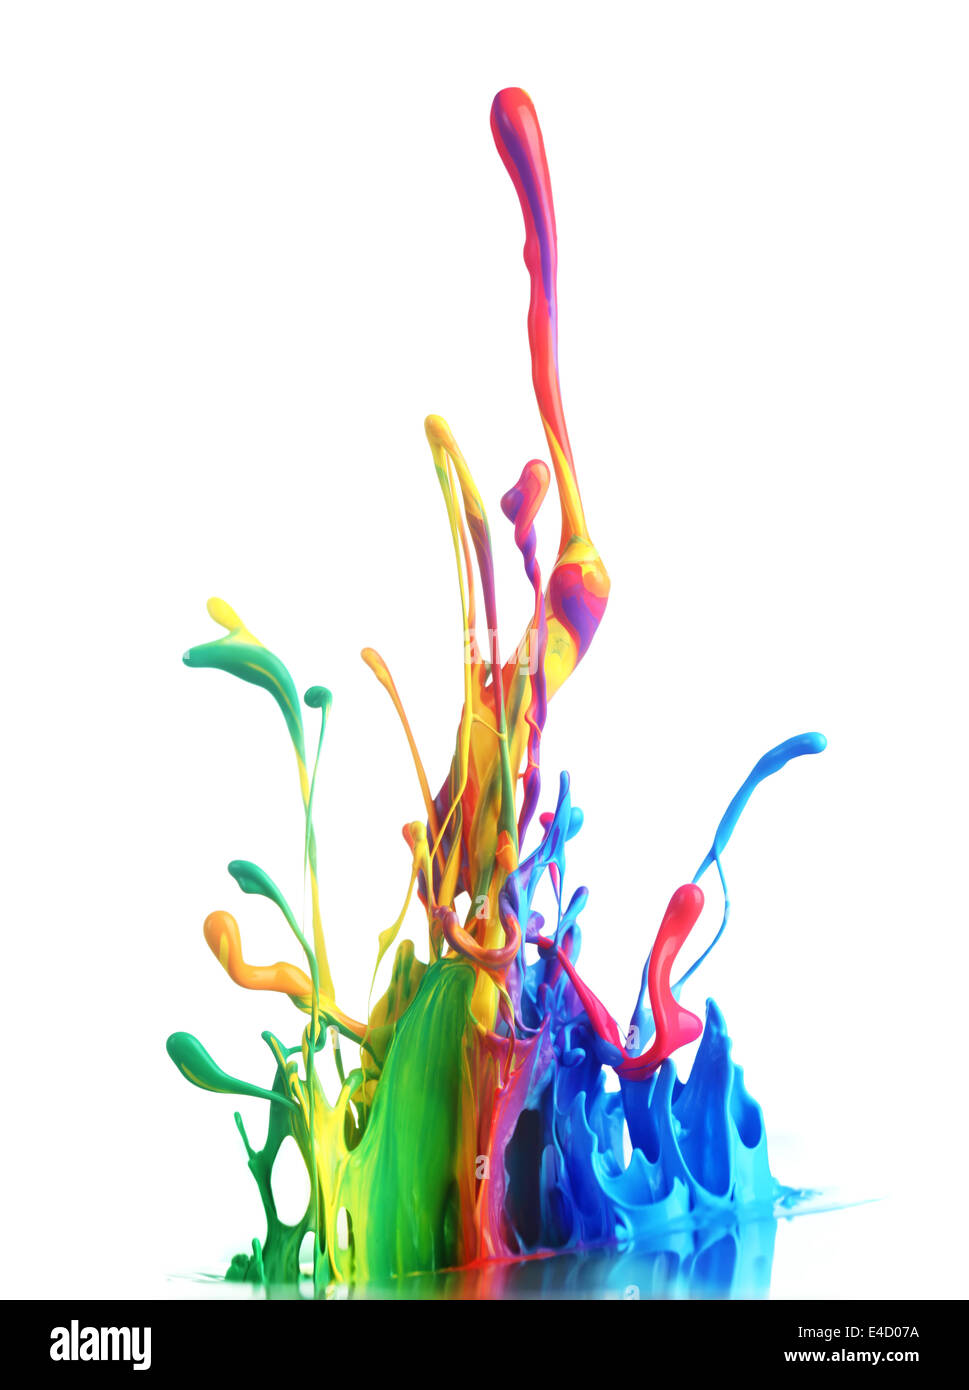 Colorful paint splashing Stock Photo